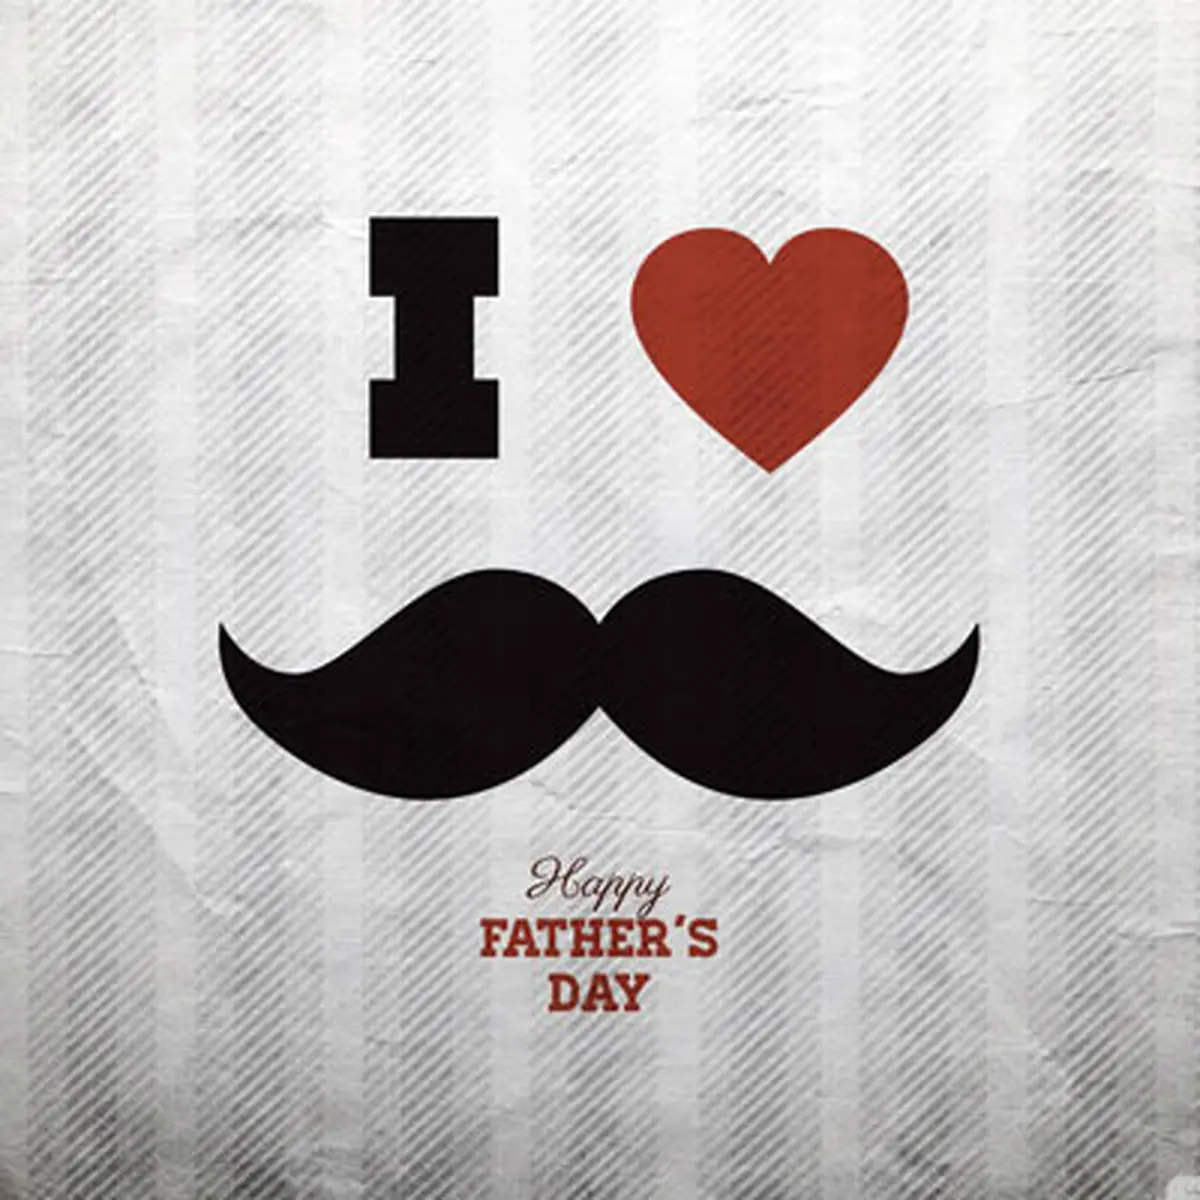 پیام تبریک روز پدر و روز مرد+ عکس